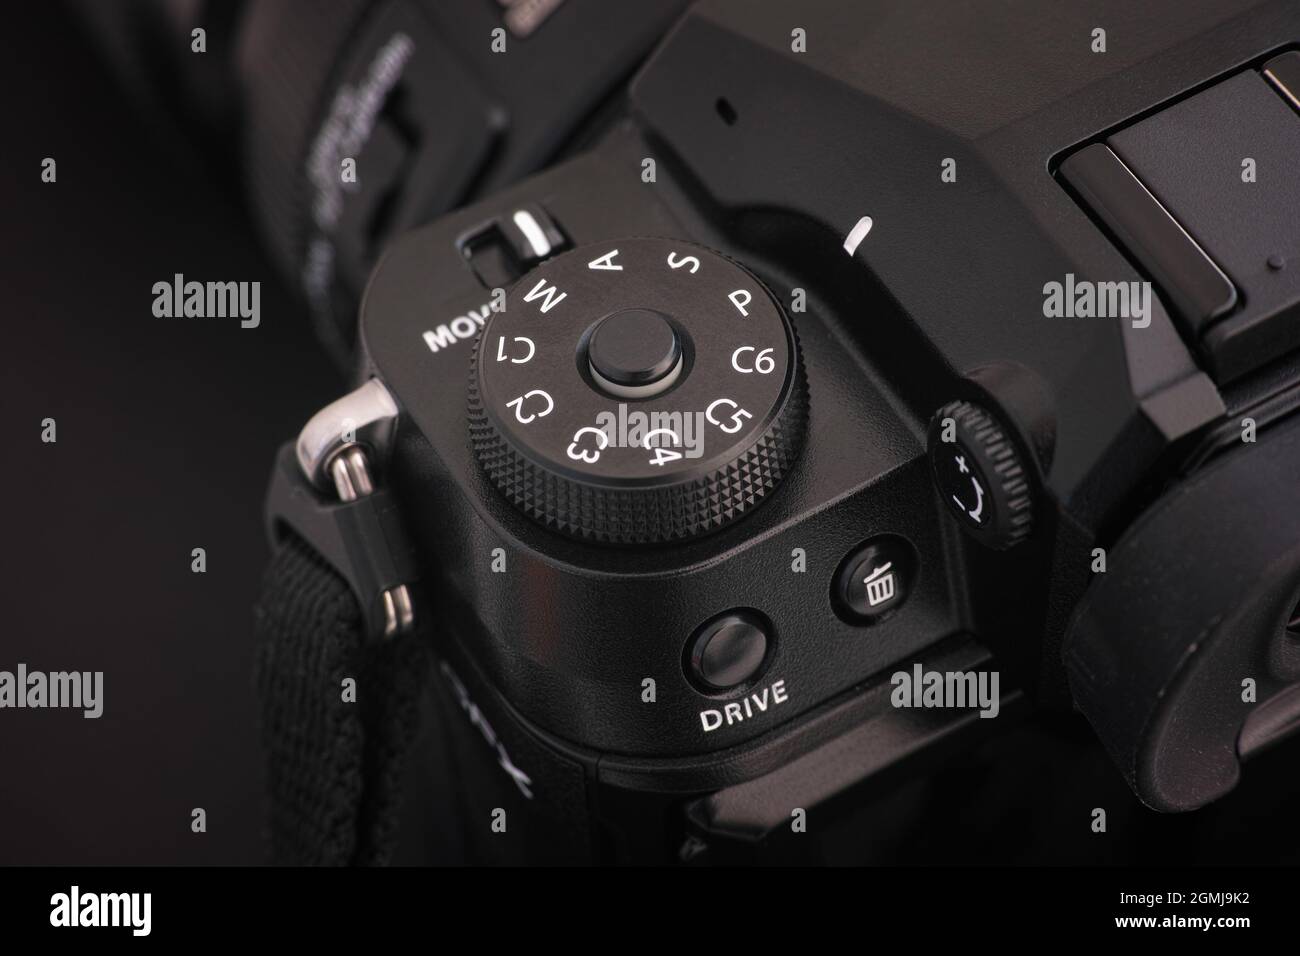 Tambow, Russische Föderation - 19. Juli 2021 Nahaufnahme des PSAM-Zifferblatts der Mittelformatkamera Fujifilm GFX 100S auf schwarzem Hintergrund. Niedrig k Stockfoto